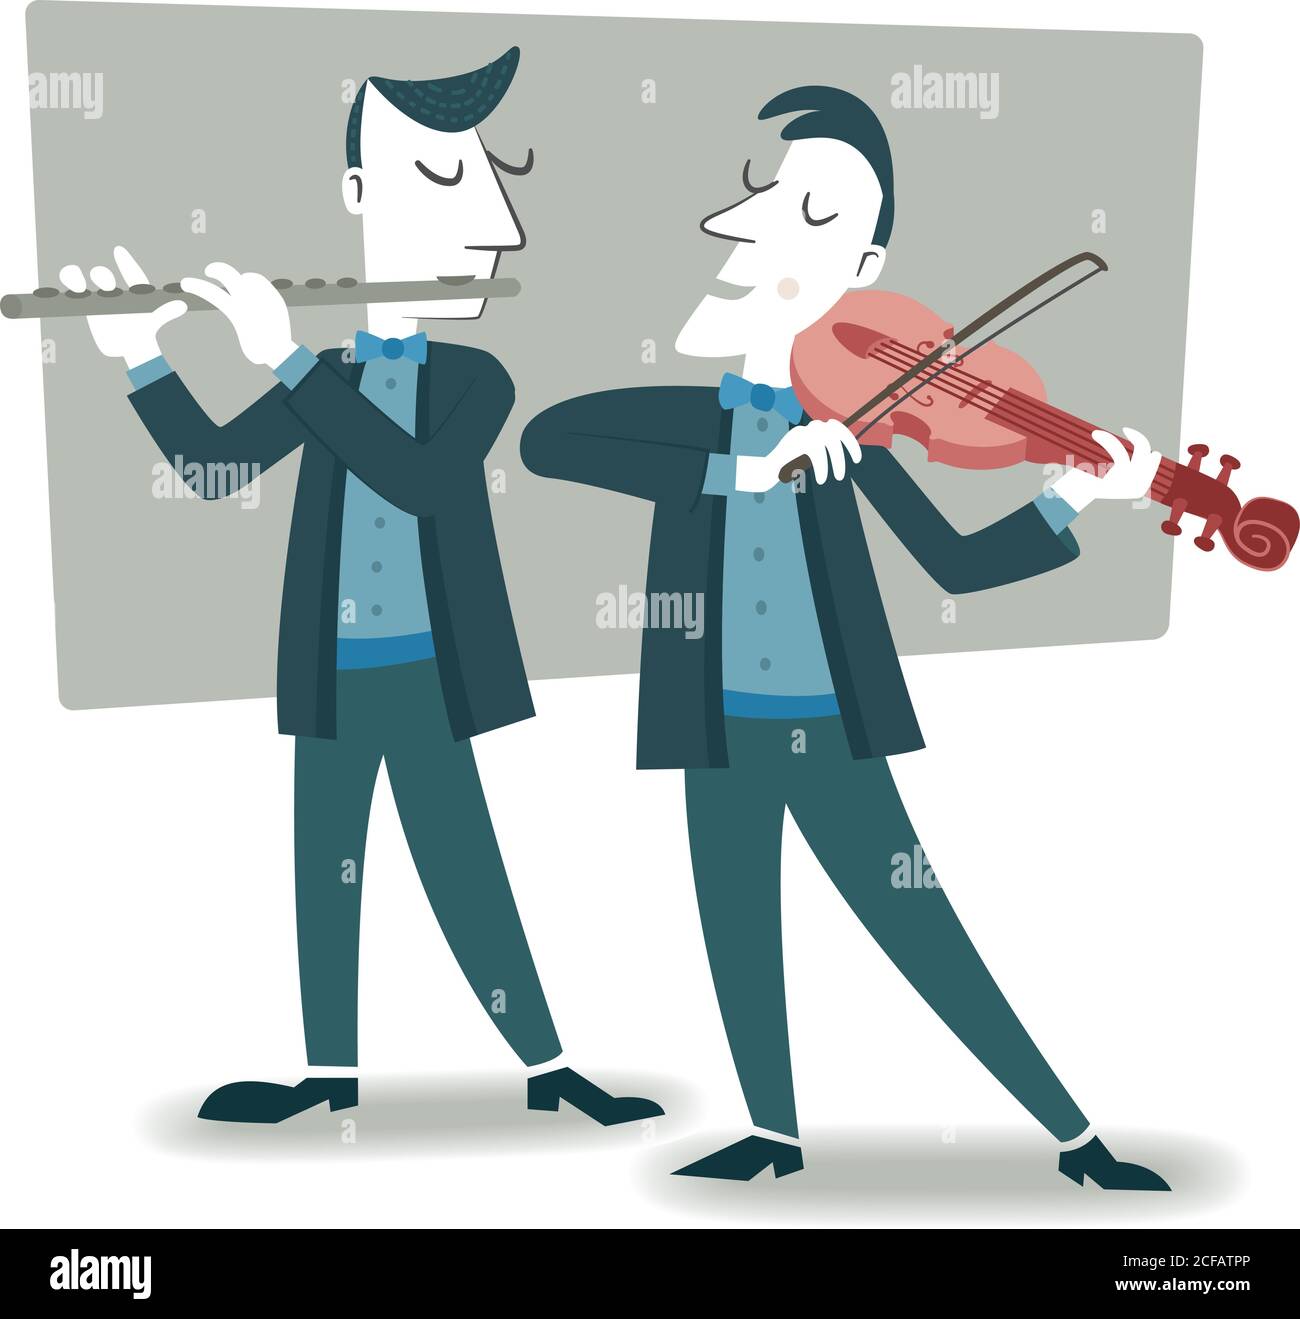 Illustrazione in stile retrò di due musicisti che suonano il violino e il flauto. Illustrazione Vettoriale